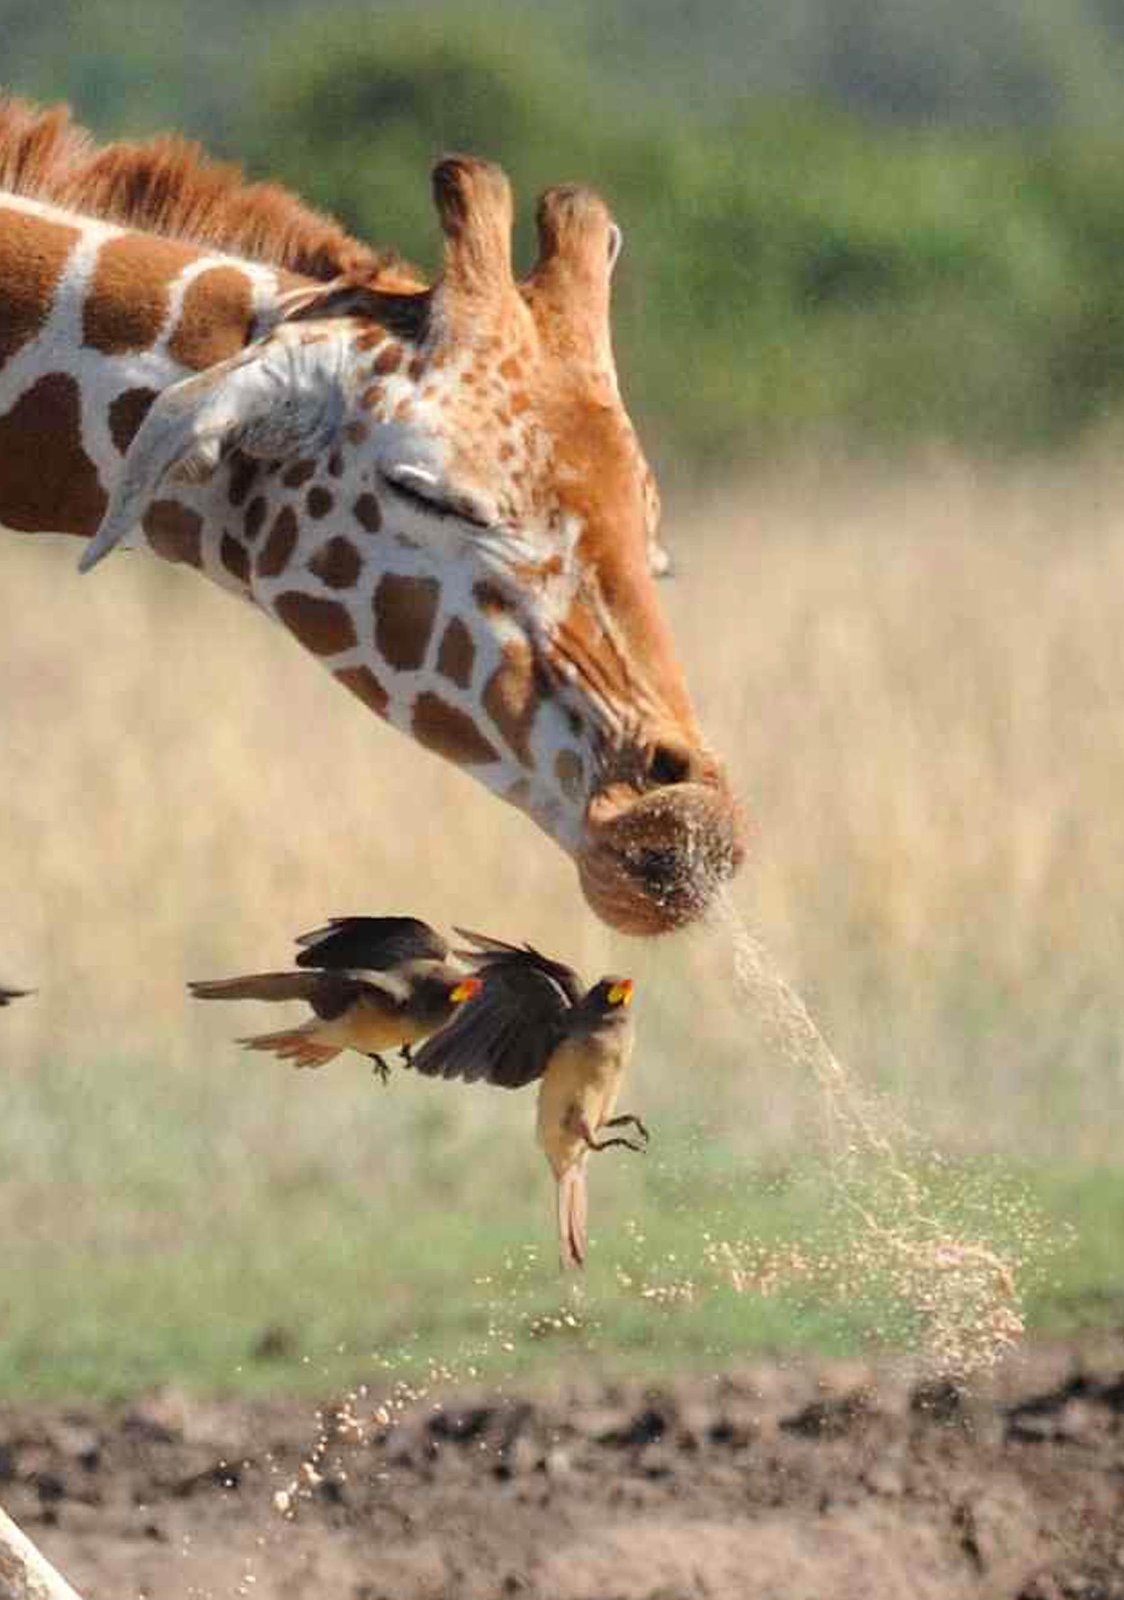 Frkající žirafa se stala vážnou hrozbou pro ptáčky letící kolem!